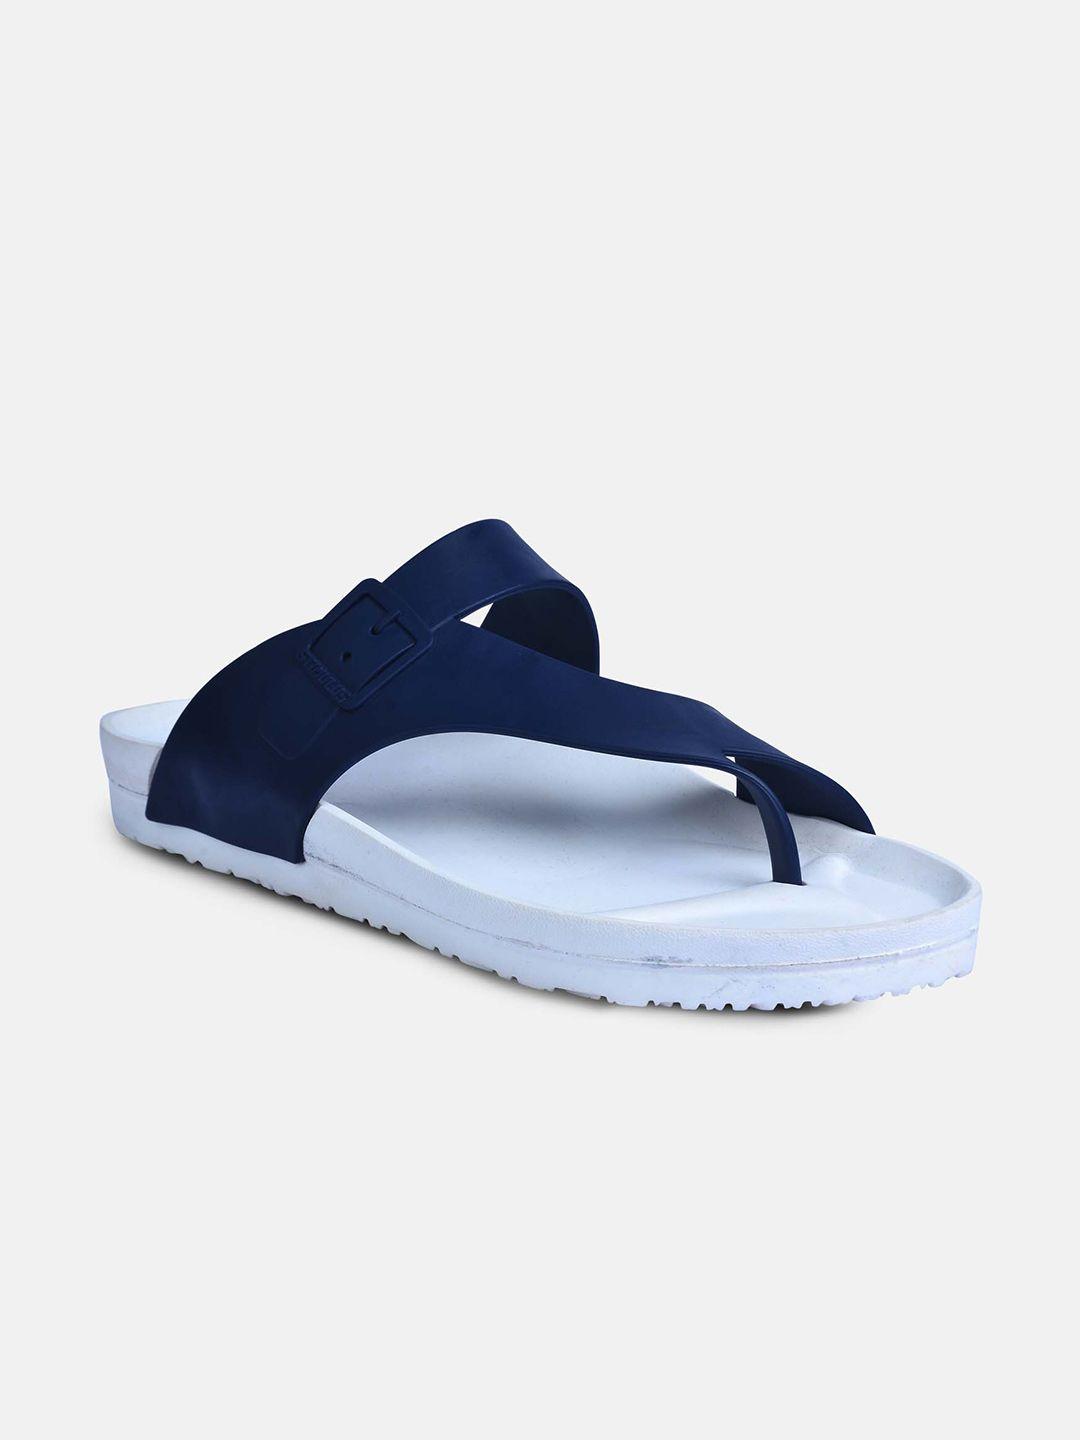 paragon-men-white-&-blue-solid-comfort-sandals